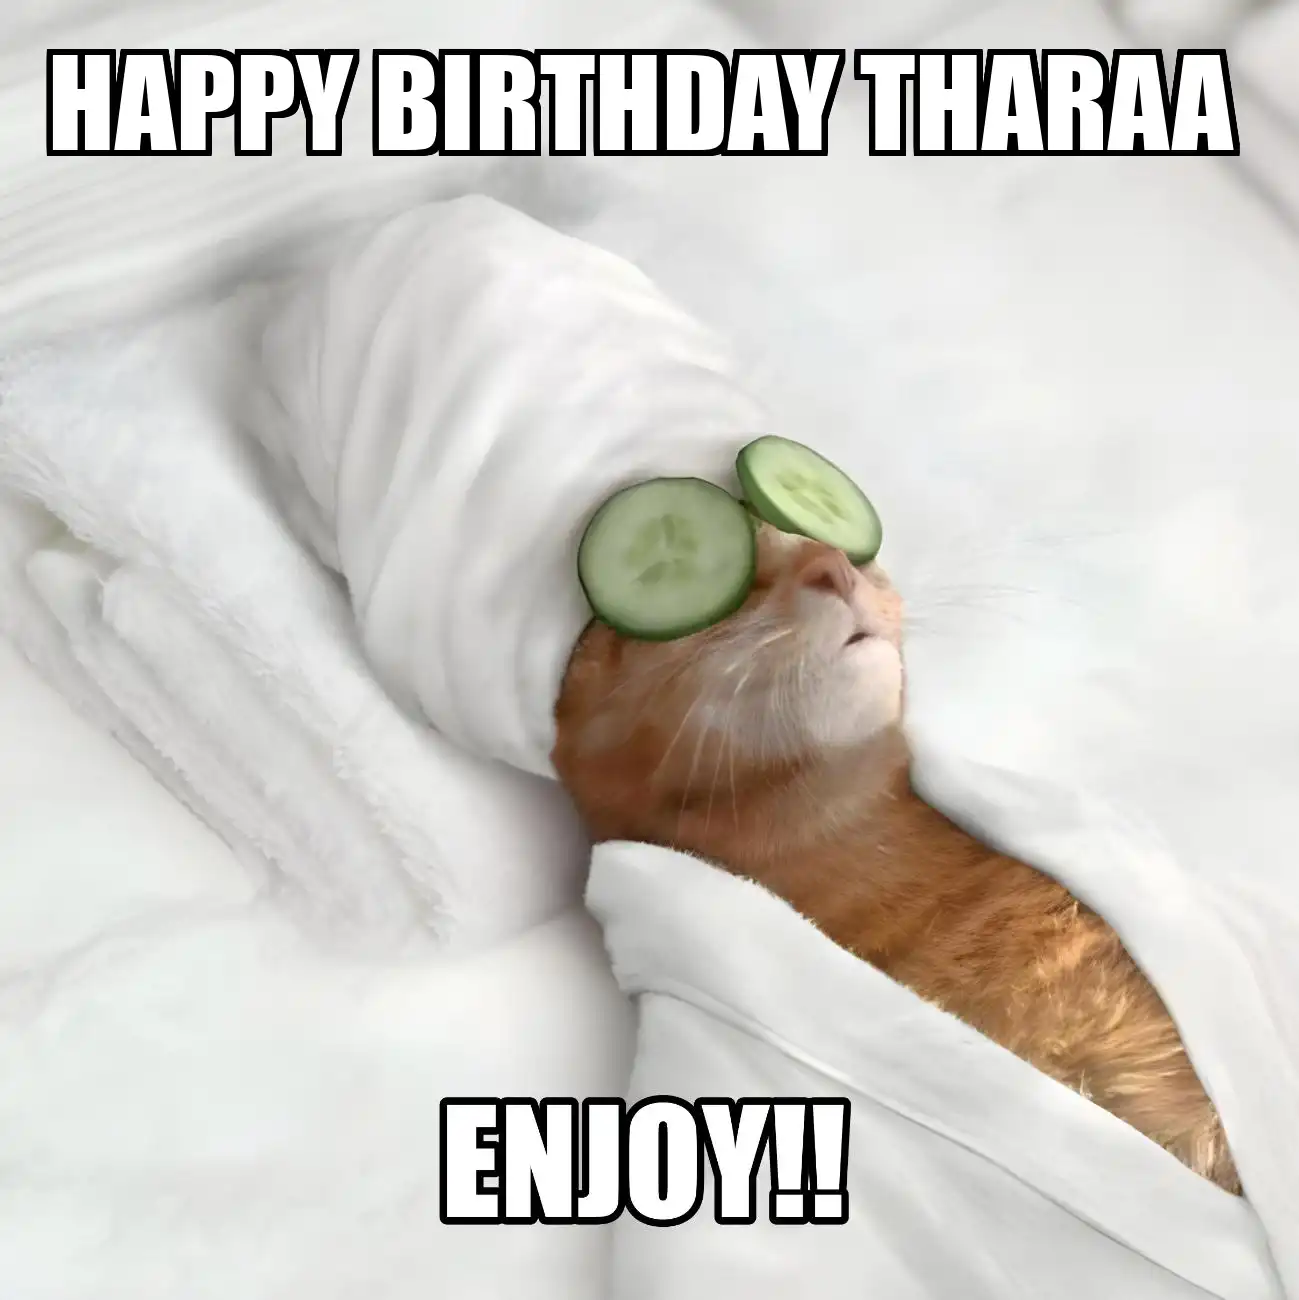 Happy Birthday Tharaa Enjoy Cat Meme